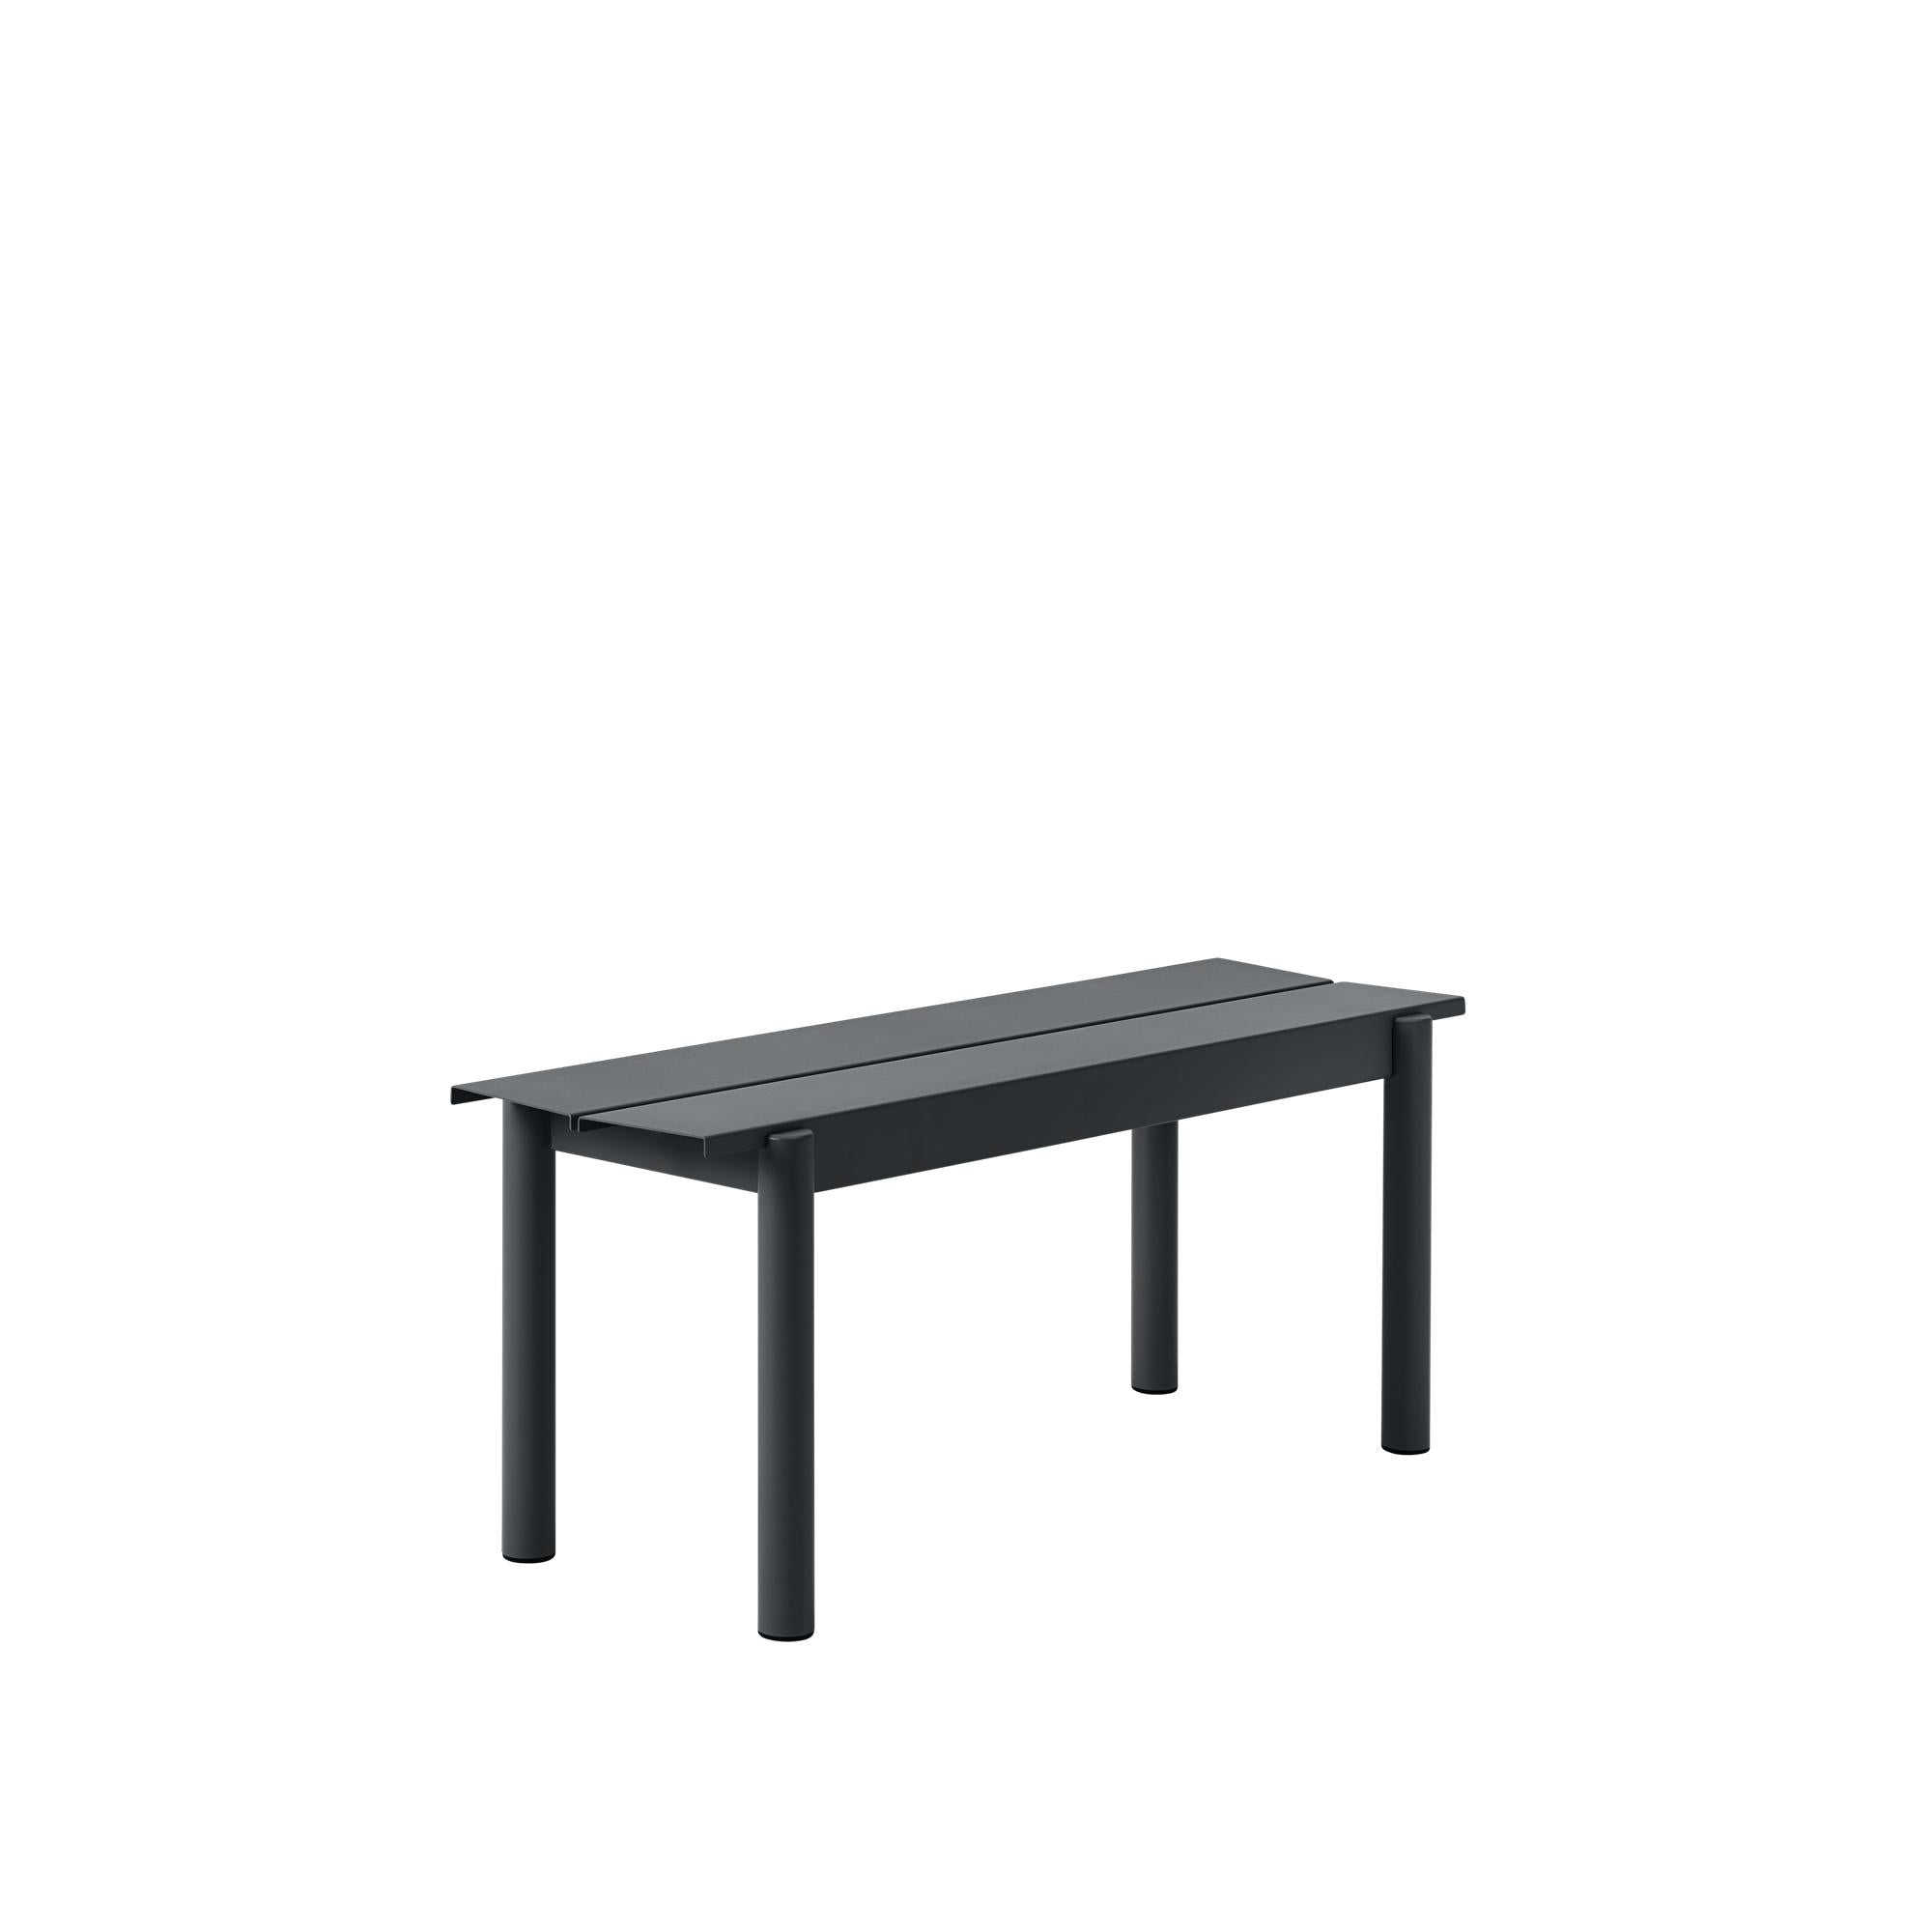 Lineární ocelová lavička Muuto L 110 cm, černá